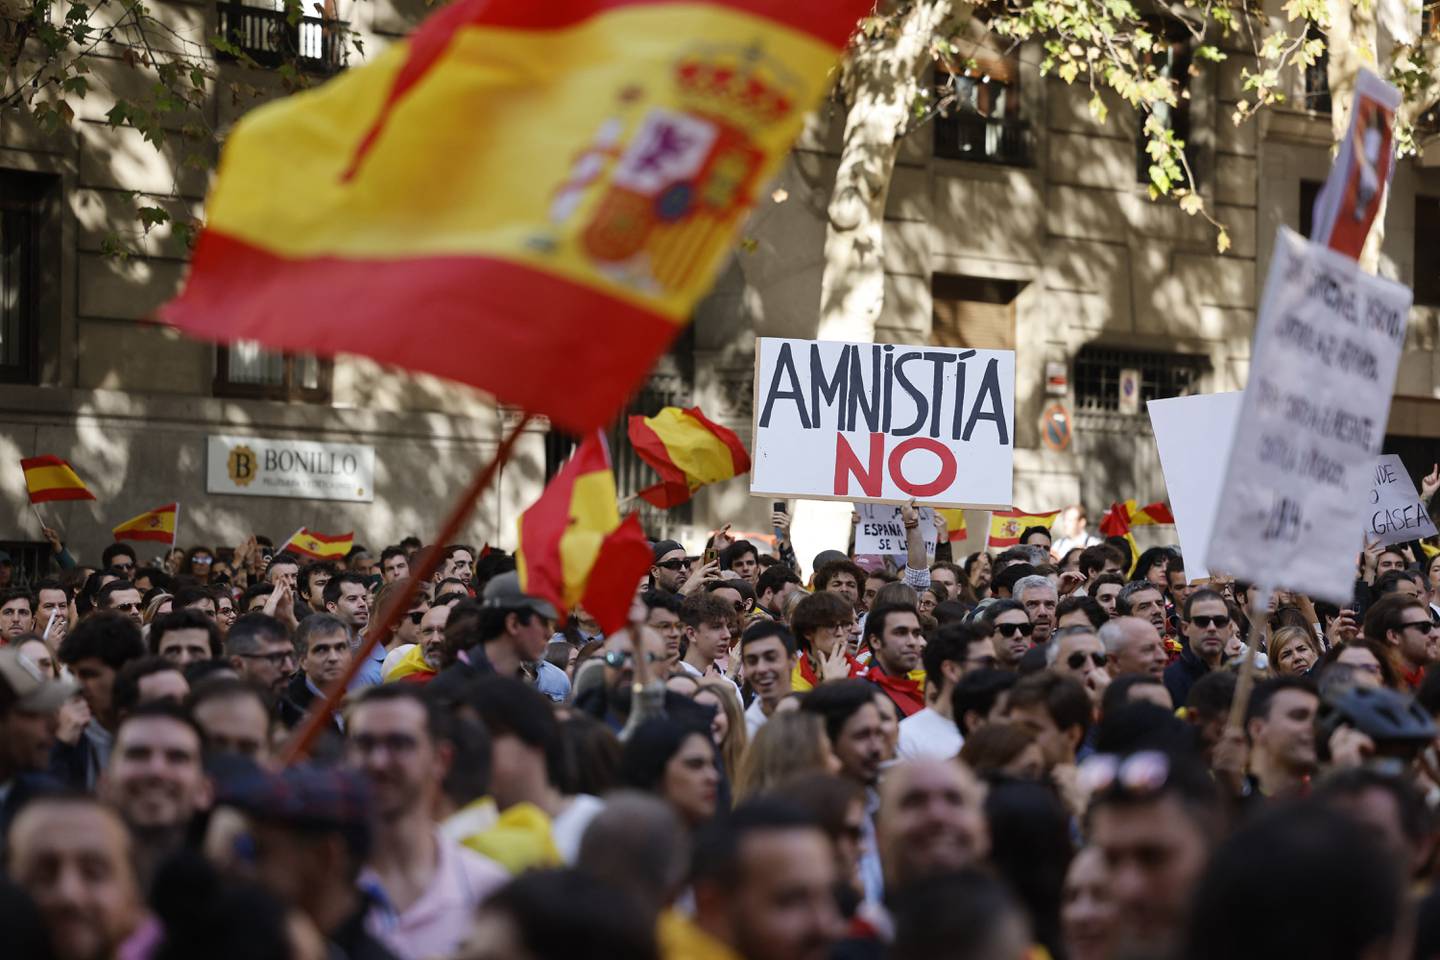 Decenas de miles de ciudadanos españoles se manifestaron el domingo en 52 ciudades en rechazo a la futura ley de amnistía para los independentistas catalanes, impulsada por el presidente del gobierno, Pedro Sánchez, como parte de una estrategia para asegurar su permanencia en el poder.